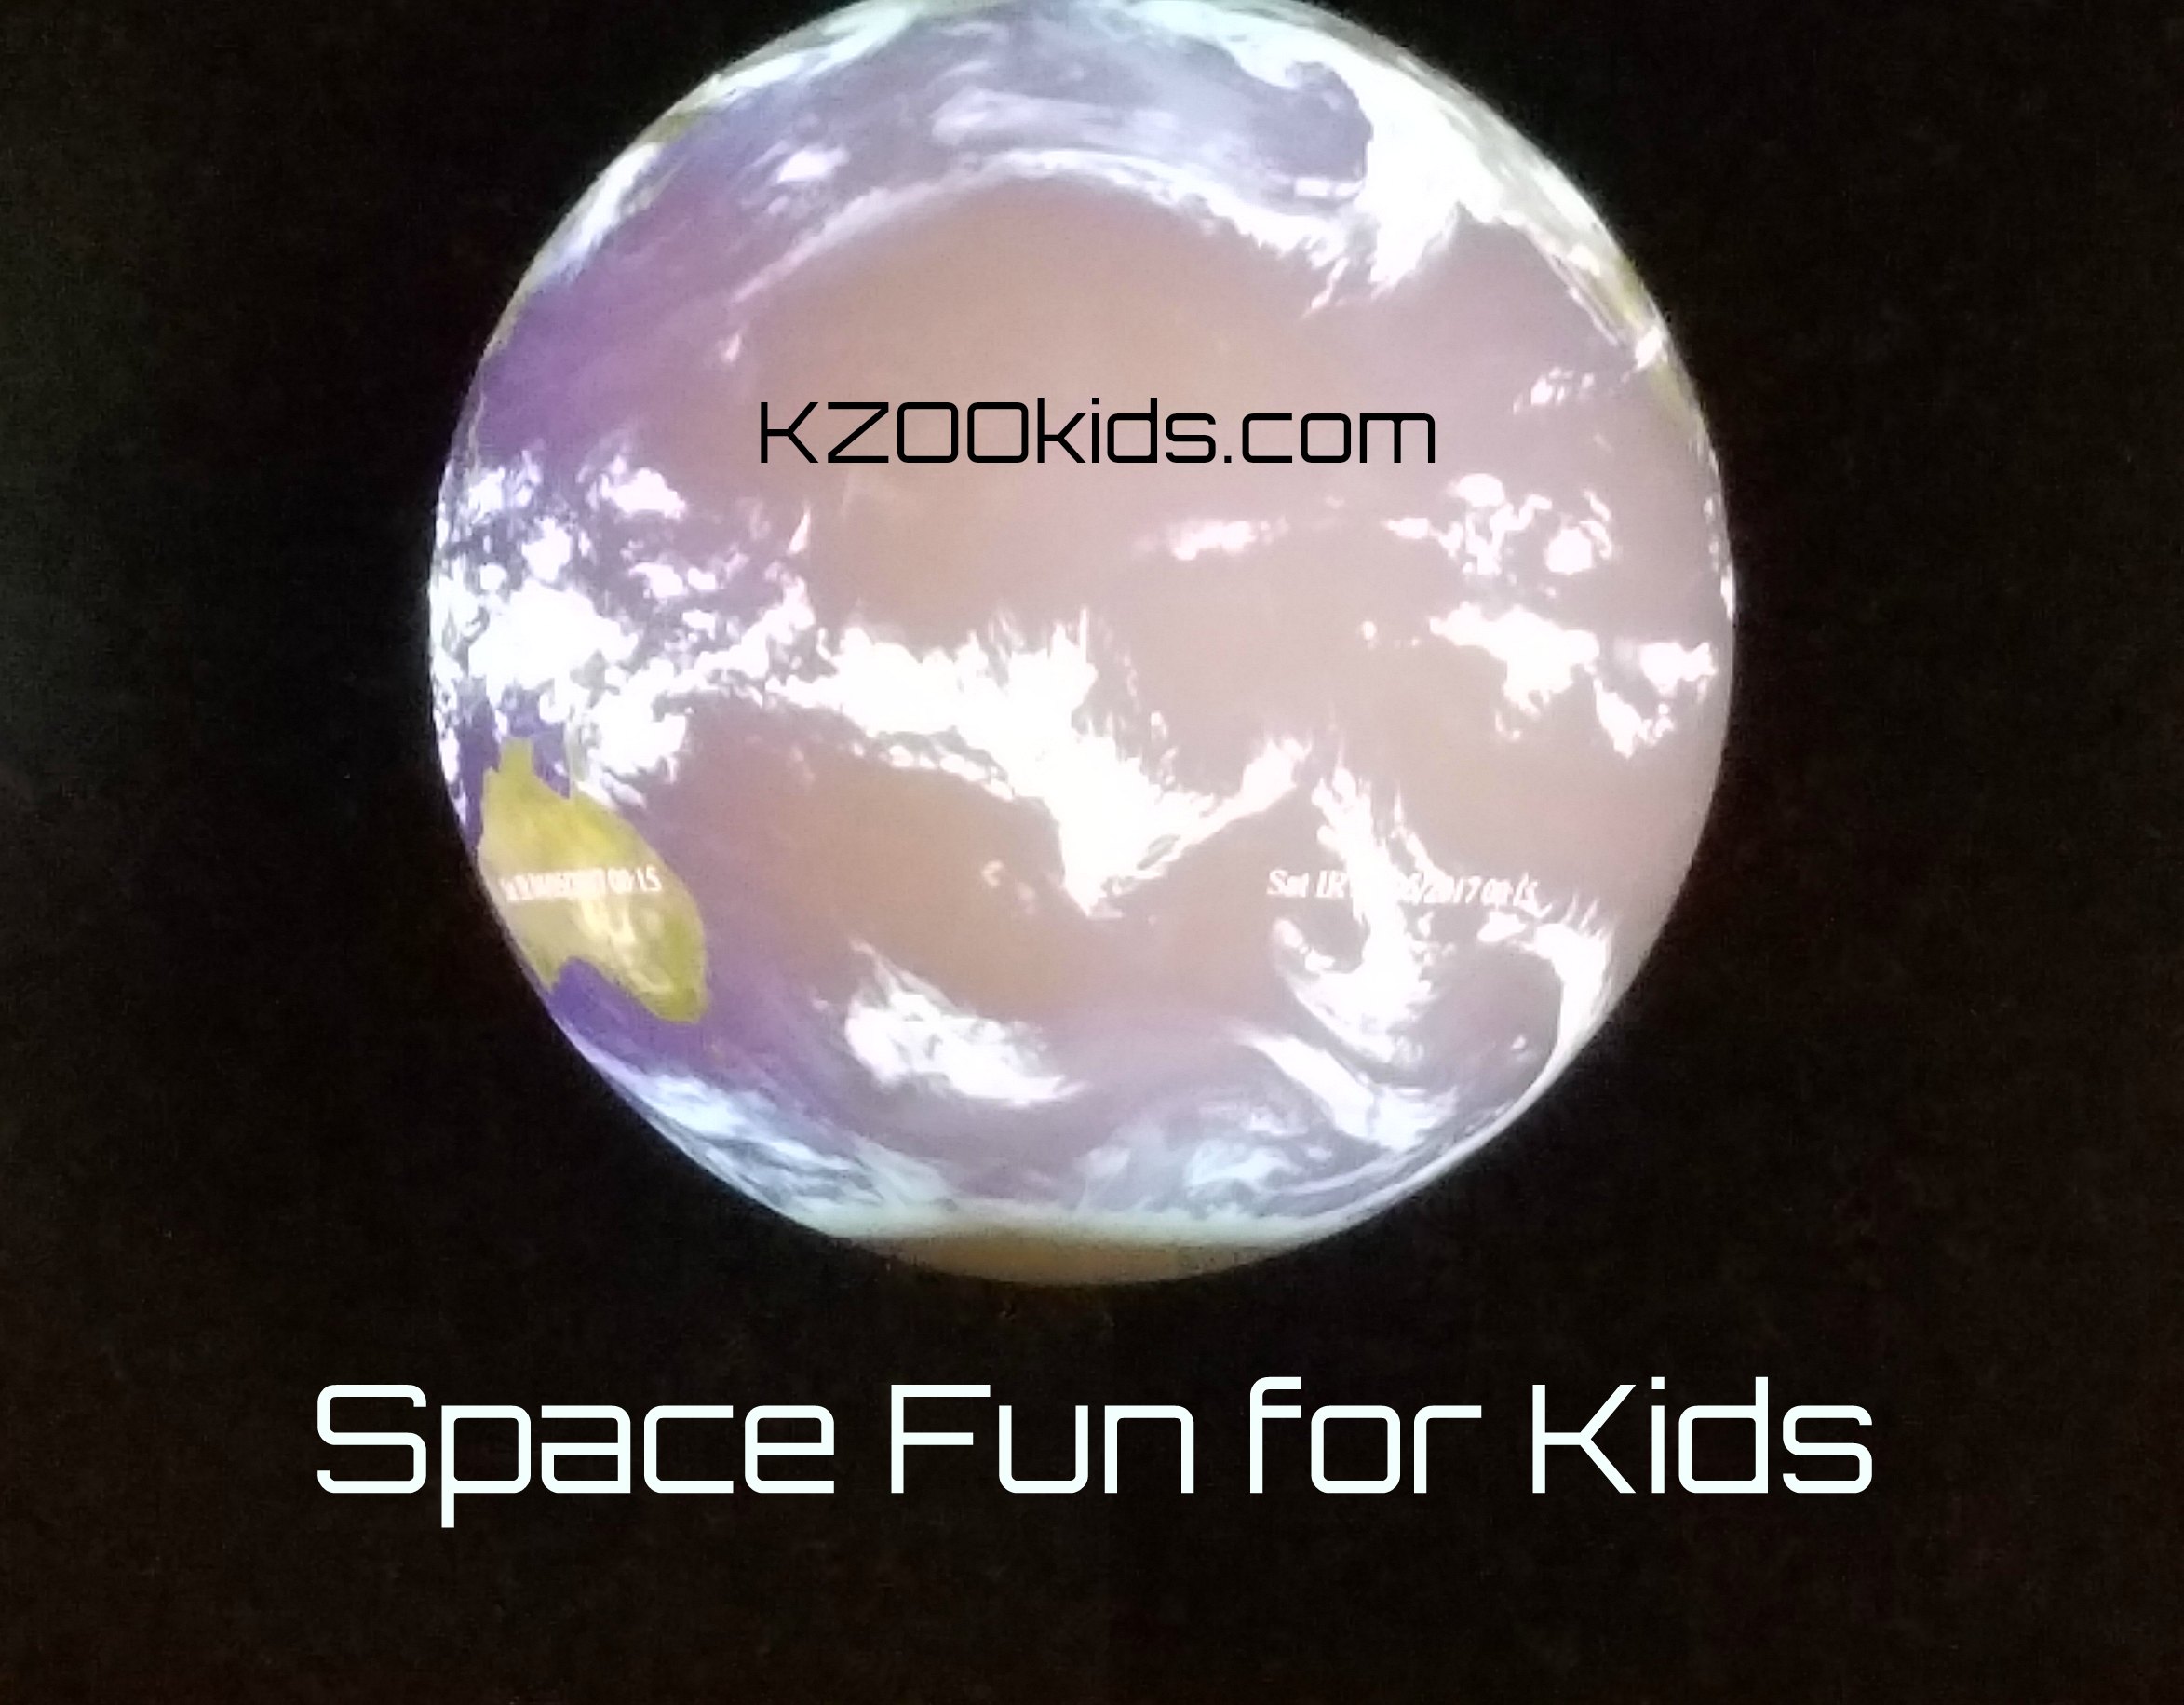 Space Fun